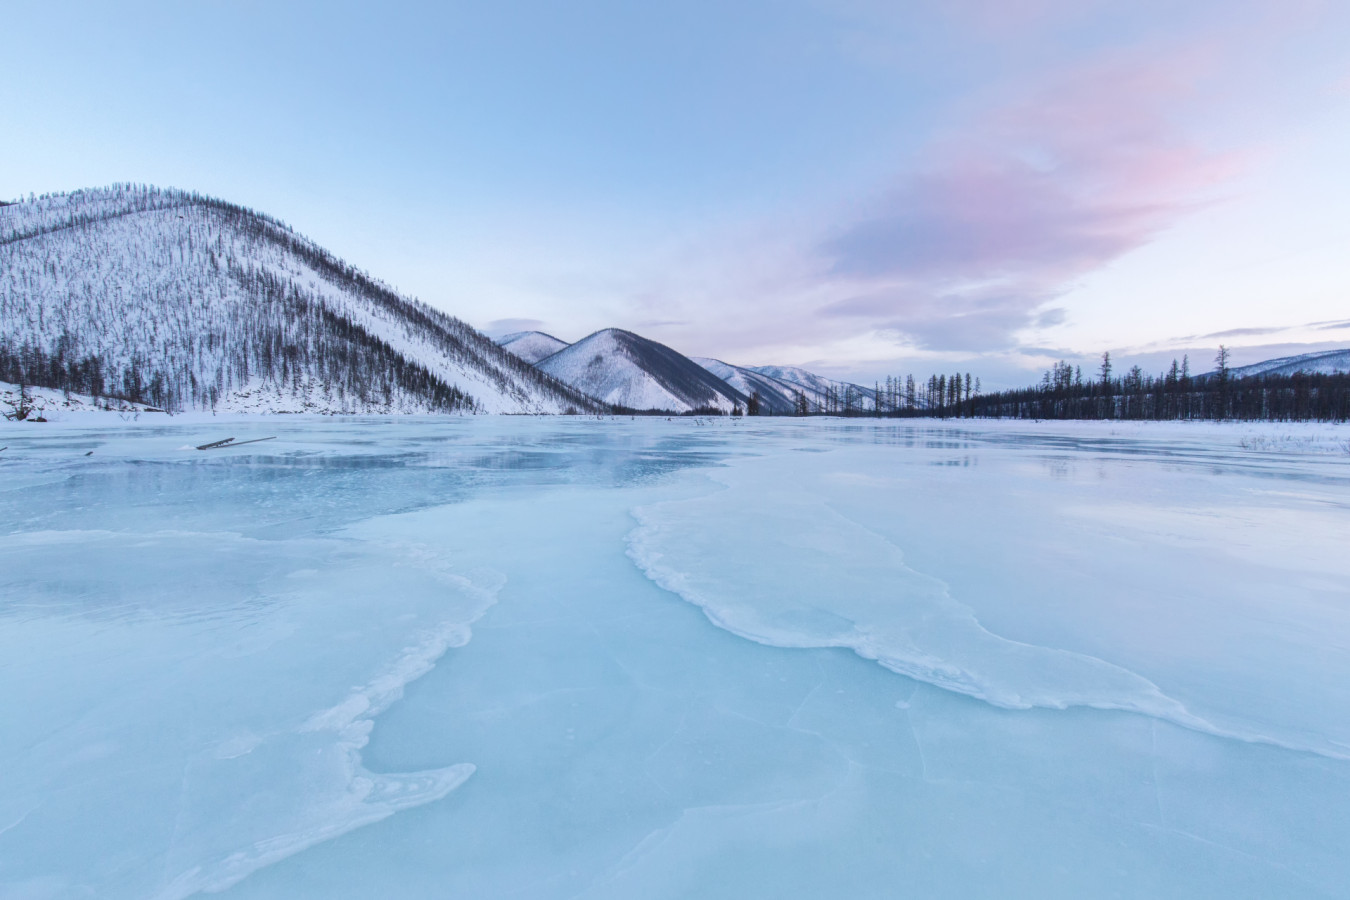 Покрытая льдом река Сахара, Якутия. Фото: Павел Глушков, участник фотоконкурса РГО «Самая красивая страна»